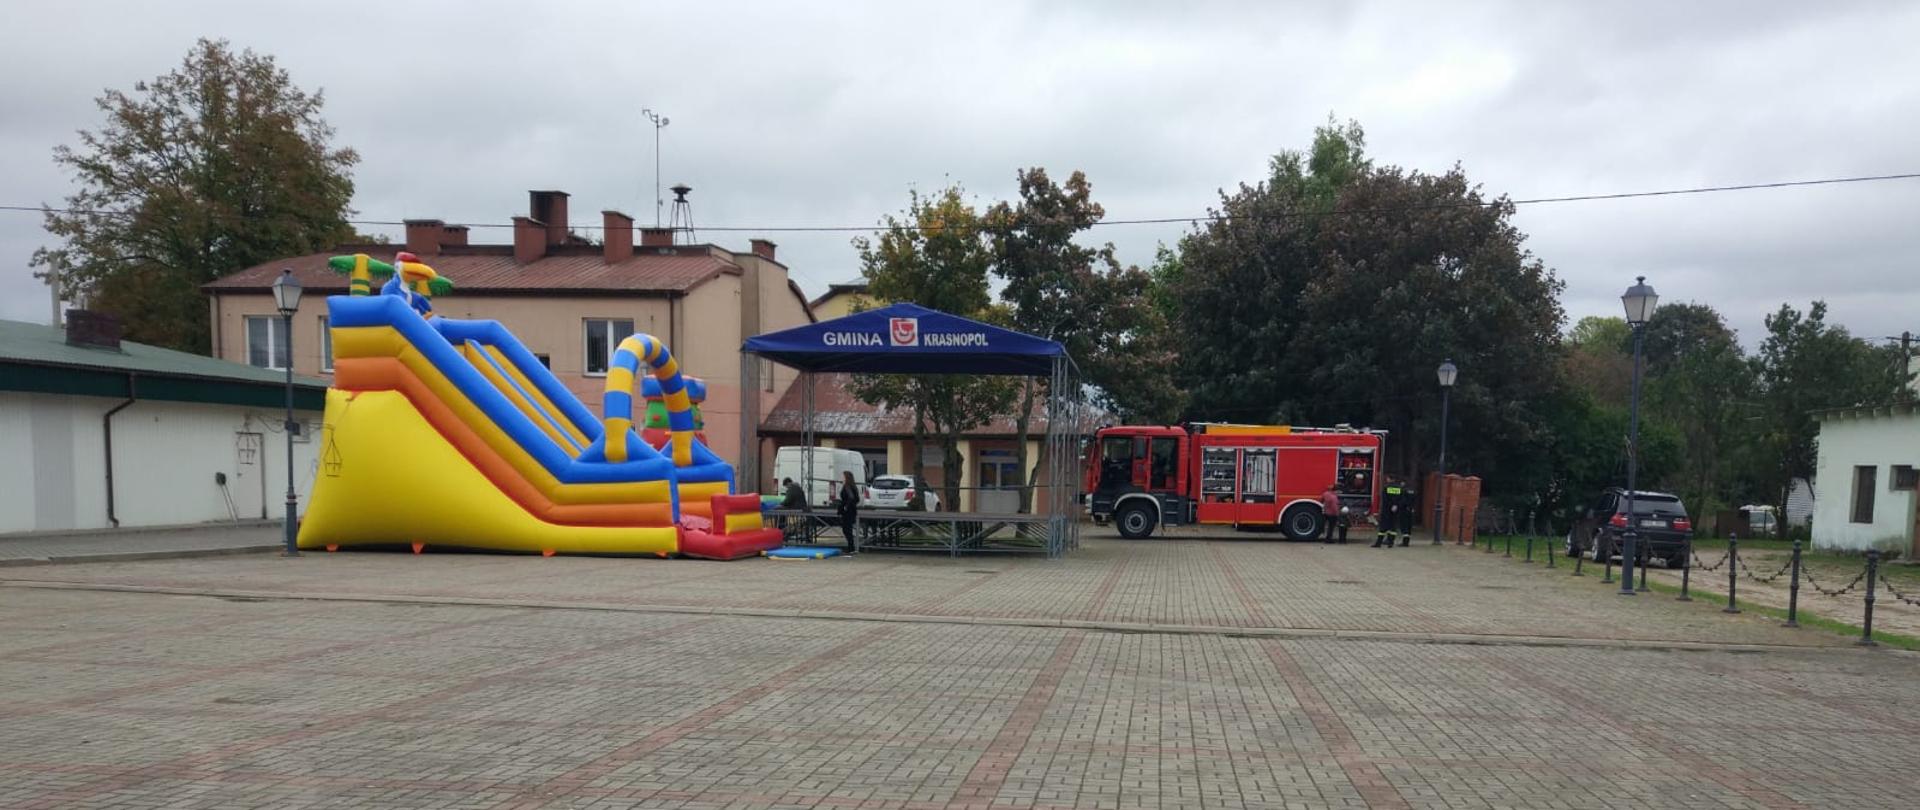 Promocja szczepień przeciw Covid-19 z udziałem KP PSP w Sejnach , organizowaną przez Urząd Gminy Krasnopol